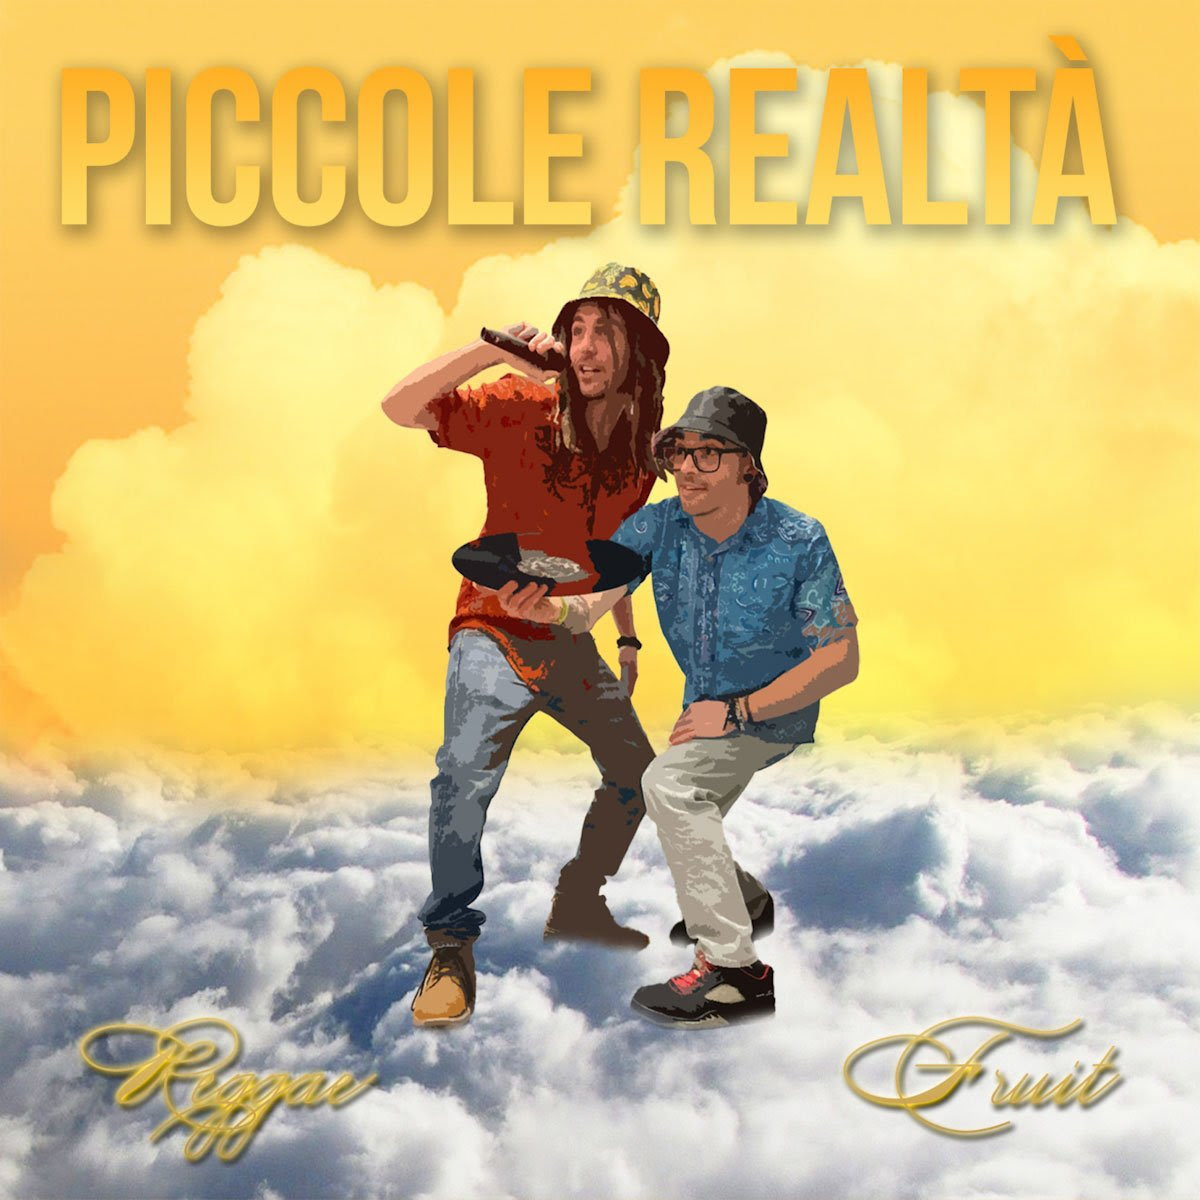 REGGAE FRUIT: dal 17 maggio sui digital store e in radio “PICCOLE REALTÀ” il nuovo singolo